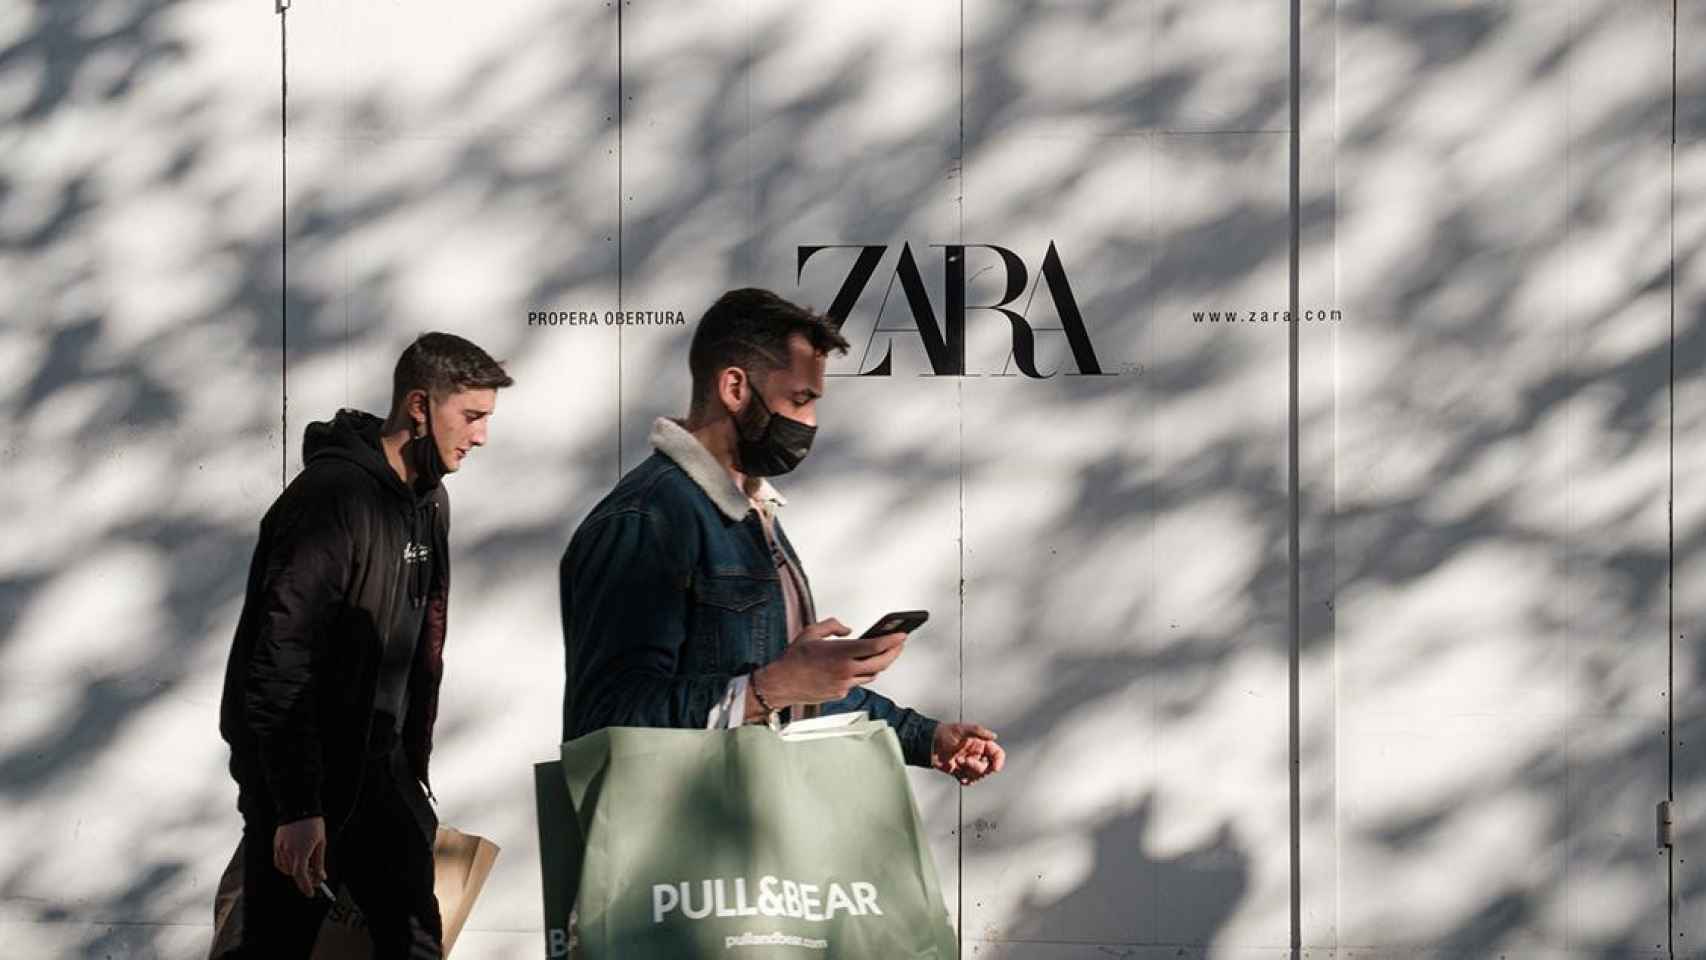 Dos hombres caminan delante de una tienda de Zara del Grupo Inditex en Barcelona / PABLO MIRANZO ( CG)